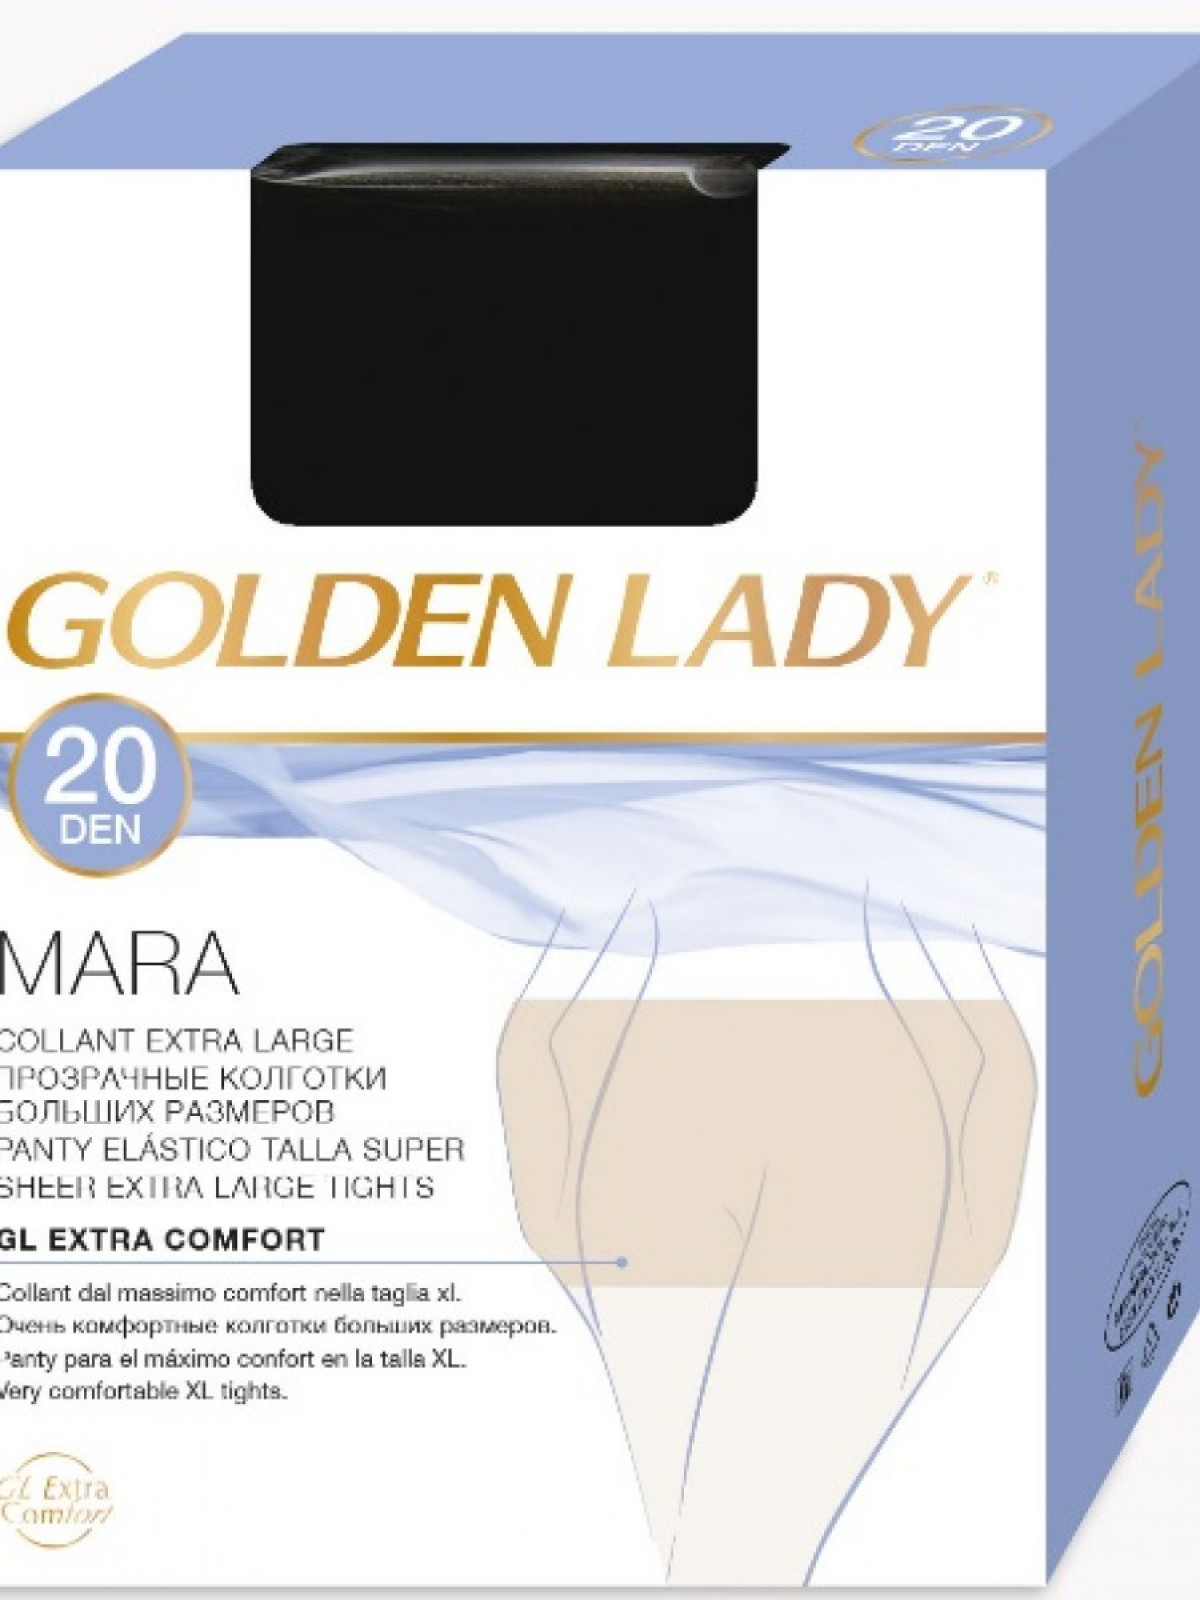 Колготки Golden Lady MARA 20